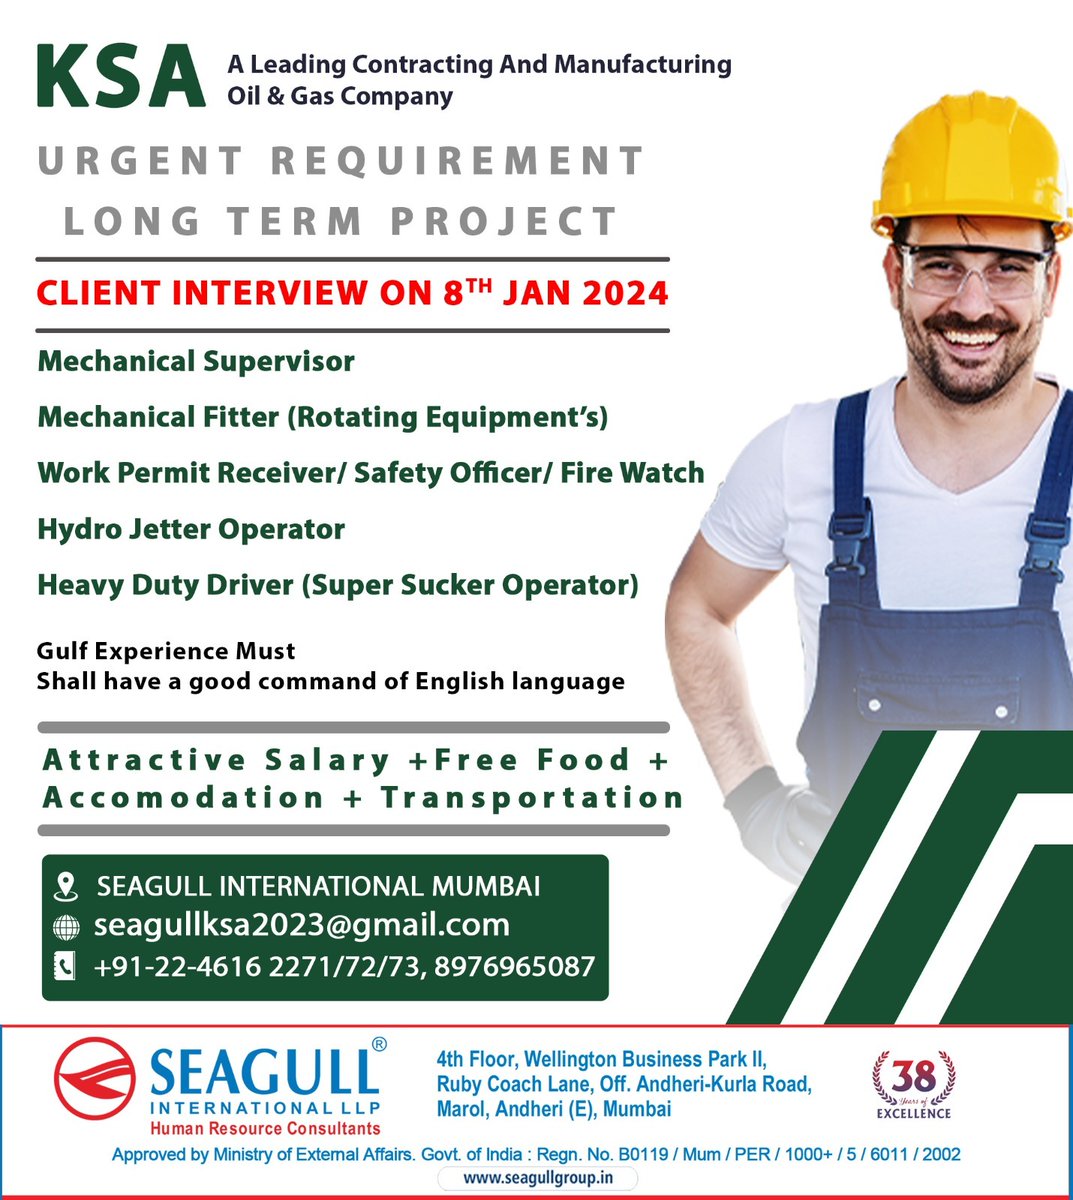 🇸🇦Ksa Jobs 
‼️Urgent Requirement 
✔️Long Term Project 
🖇️Client Interview On 8th January 2024
📍Location- Mumbai
.

.

.
#ksajobs #seagull #mumbaijobs #mechanicalsuperviosr #mechanicalfitter #workpermitreceiver #safetyofficer #firewatch